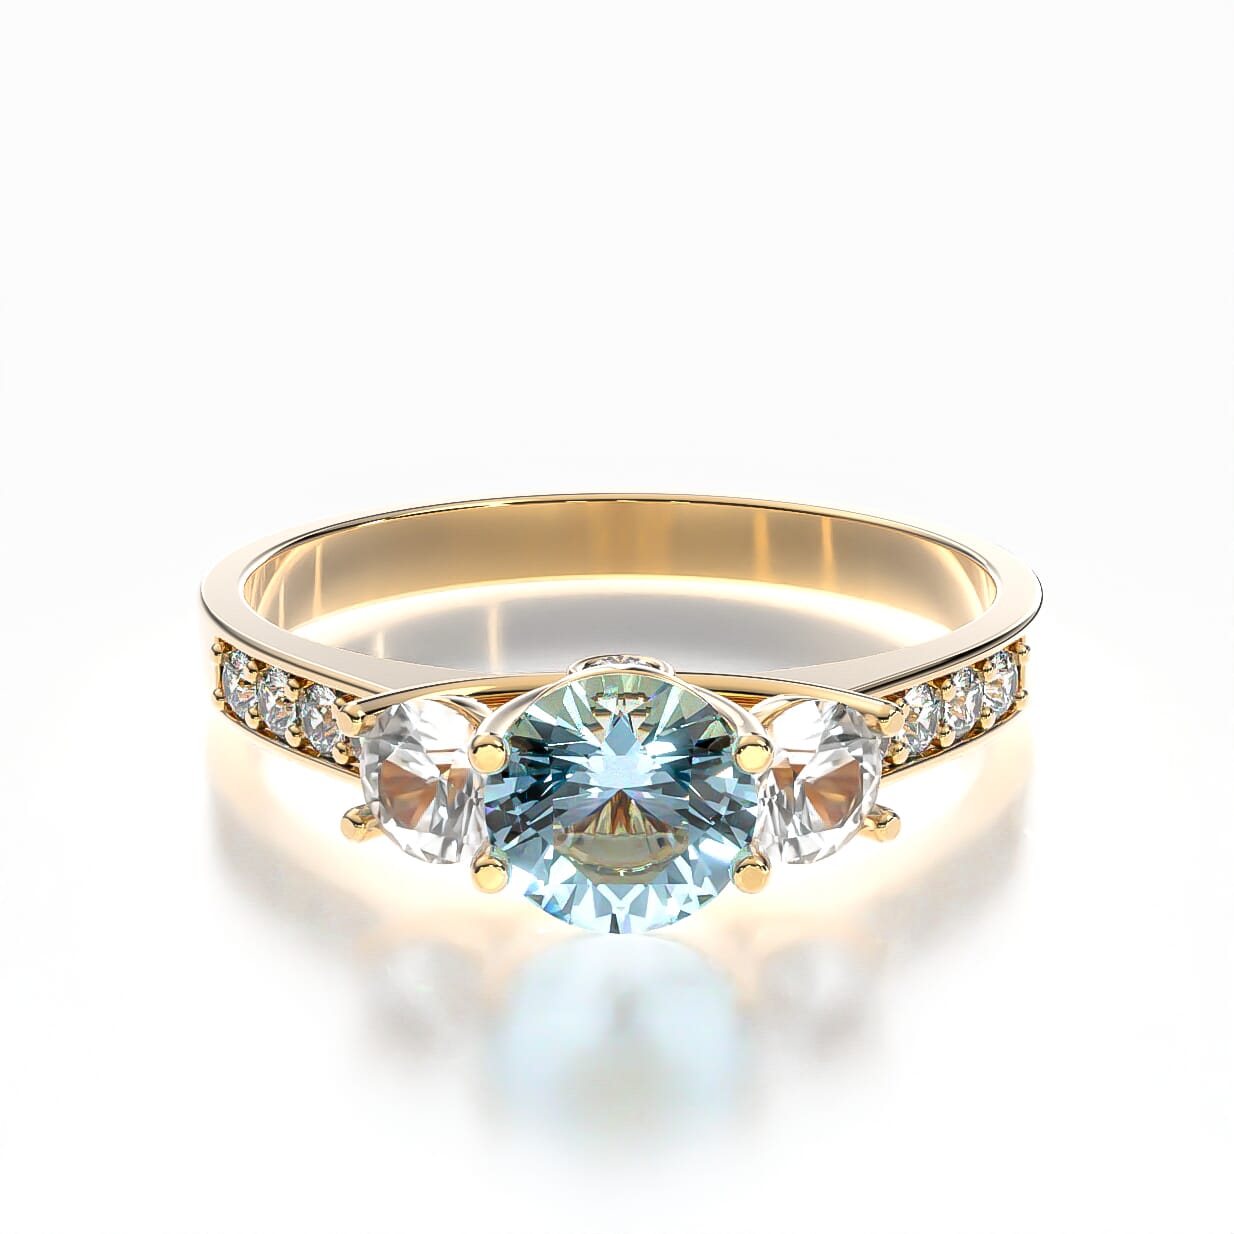 Dream engagement ring: gold, aquamarine